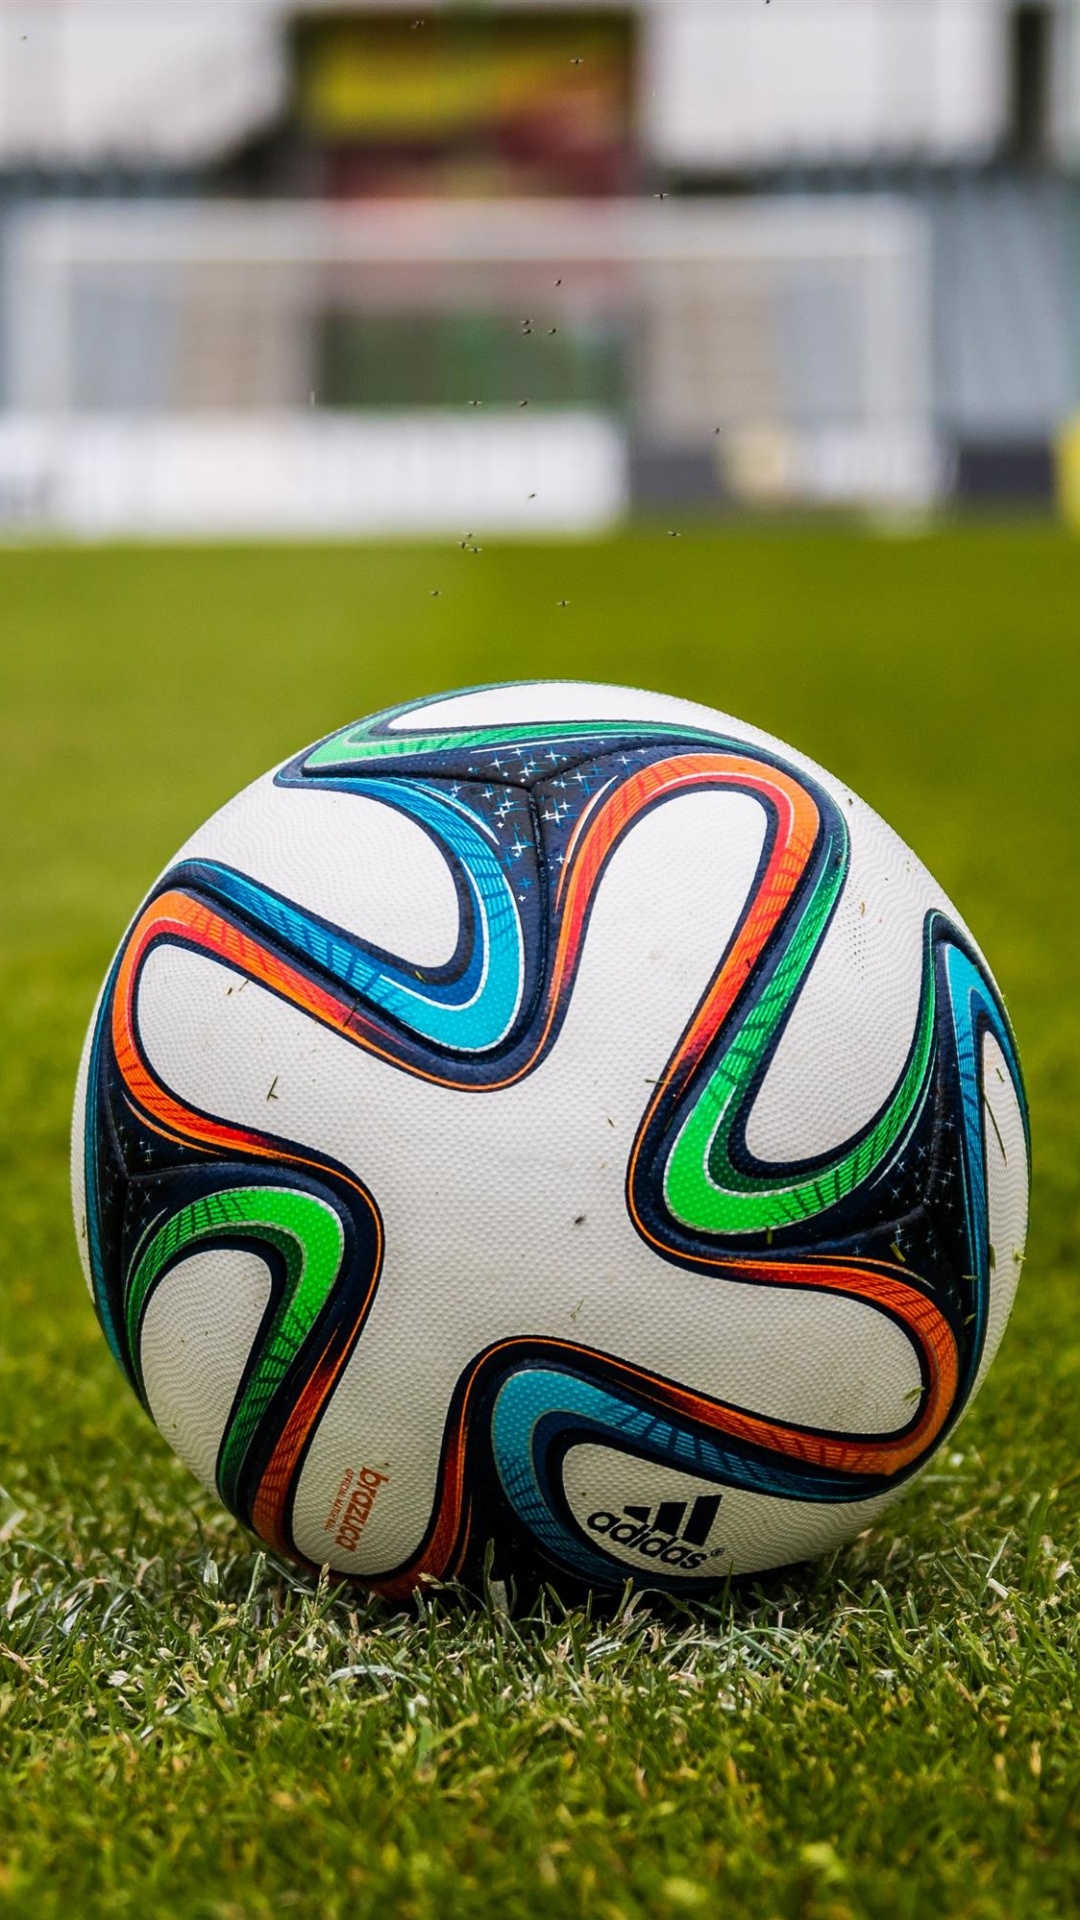 Ballon de Football Blanc Bleu et Rouge Sur Terrain D'herbe Verte Pendant la Journée. Wallpaper in 1080x1920 Resolution